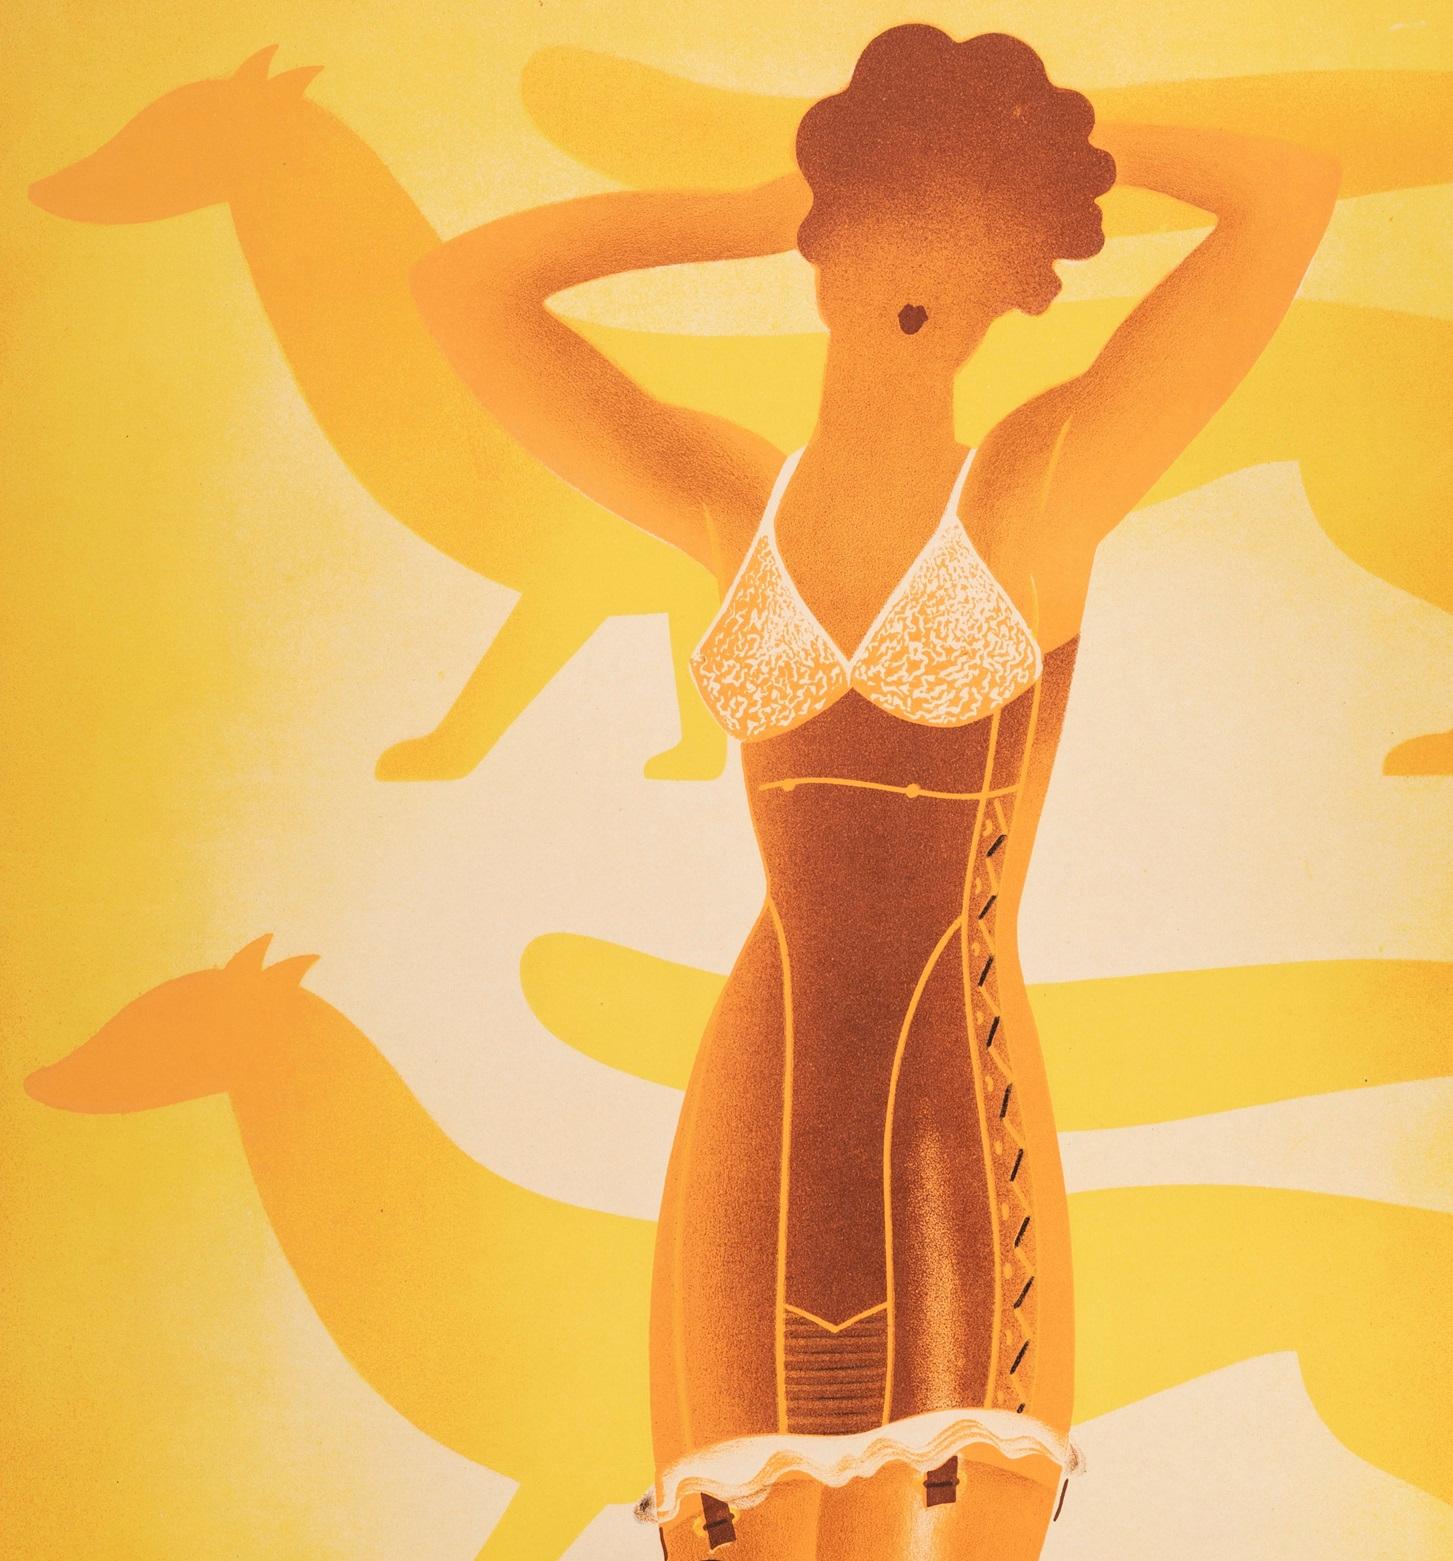 Original Vintage Poster created by Roger Perot for Corset lefuret in 1933.

Artist: Perot Roger
Title: Corsets Le Furet – Le rêve de la femme
Date: 1933
Size: 39.4 x 54.7 in / 100 x 139 cm
Printer: Etablt Delattre, 18 rue le Bua, Paris